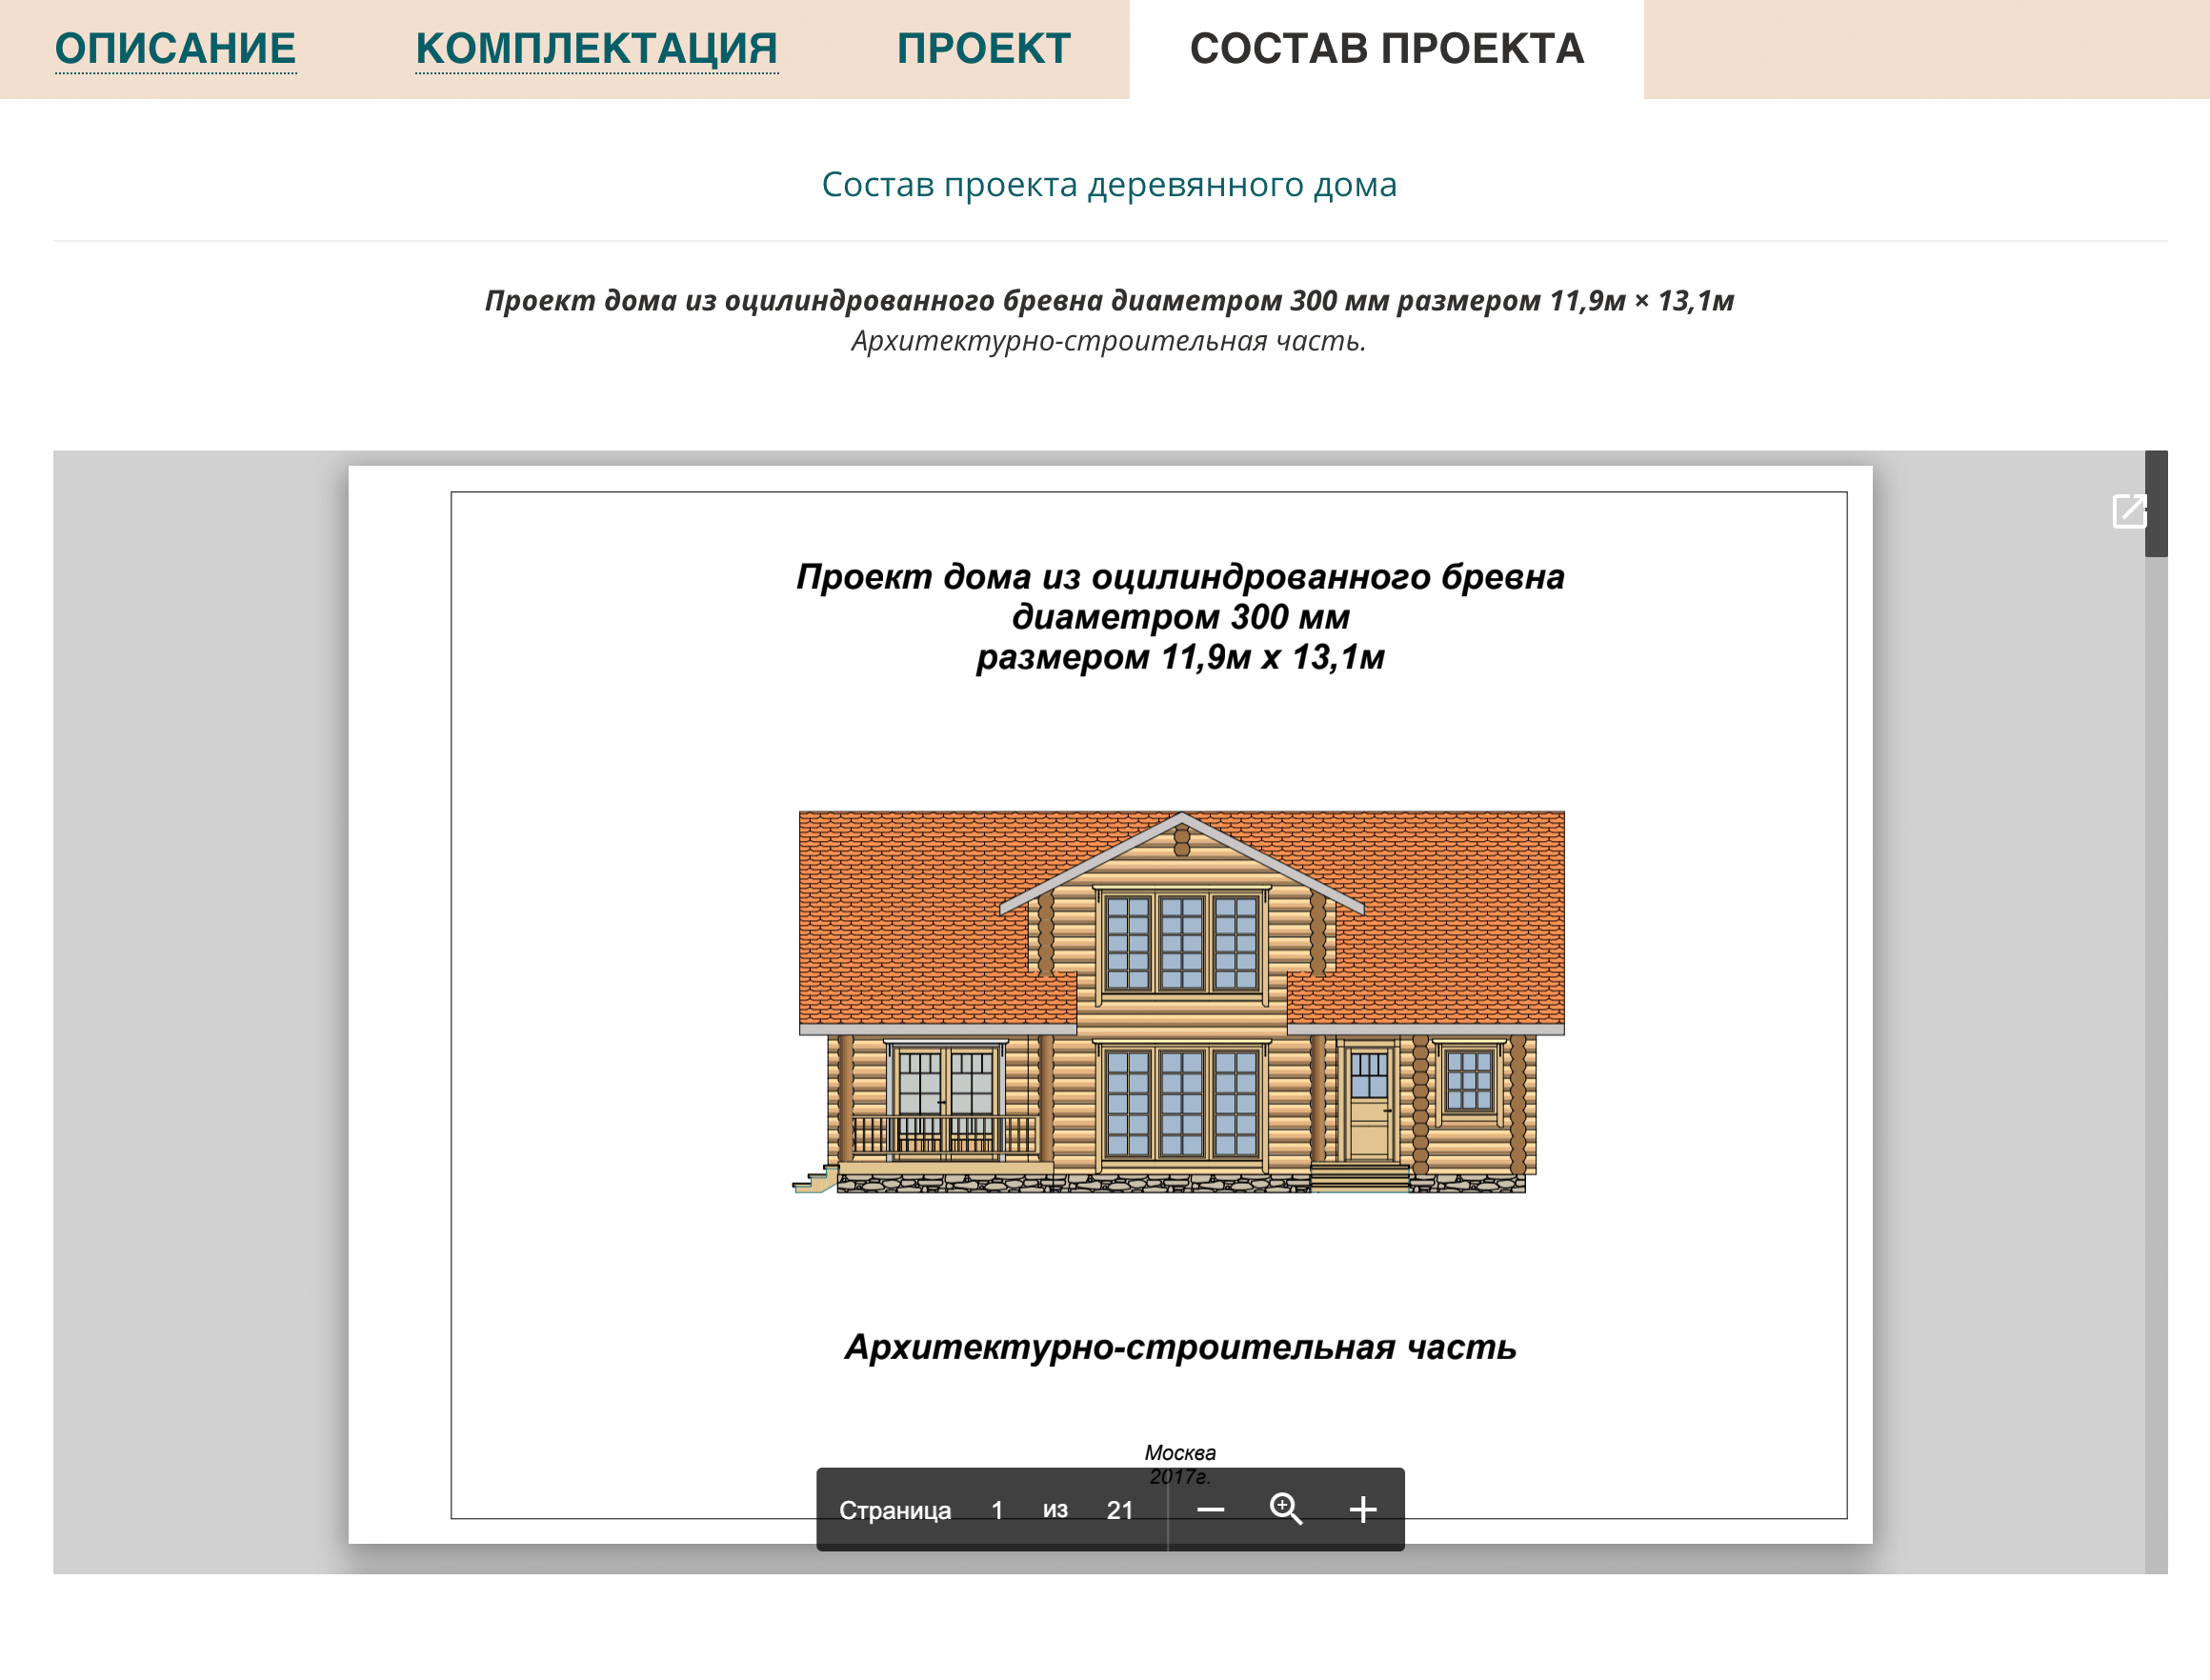 Шаблонный проект дома доступен на сайте. В наш проект внесли изменения